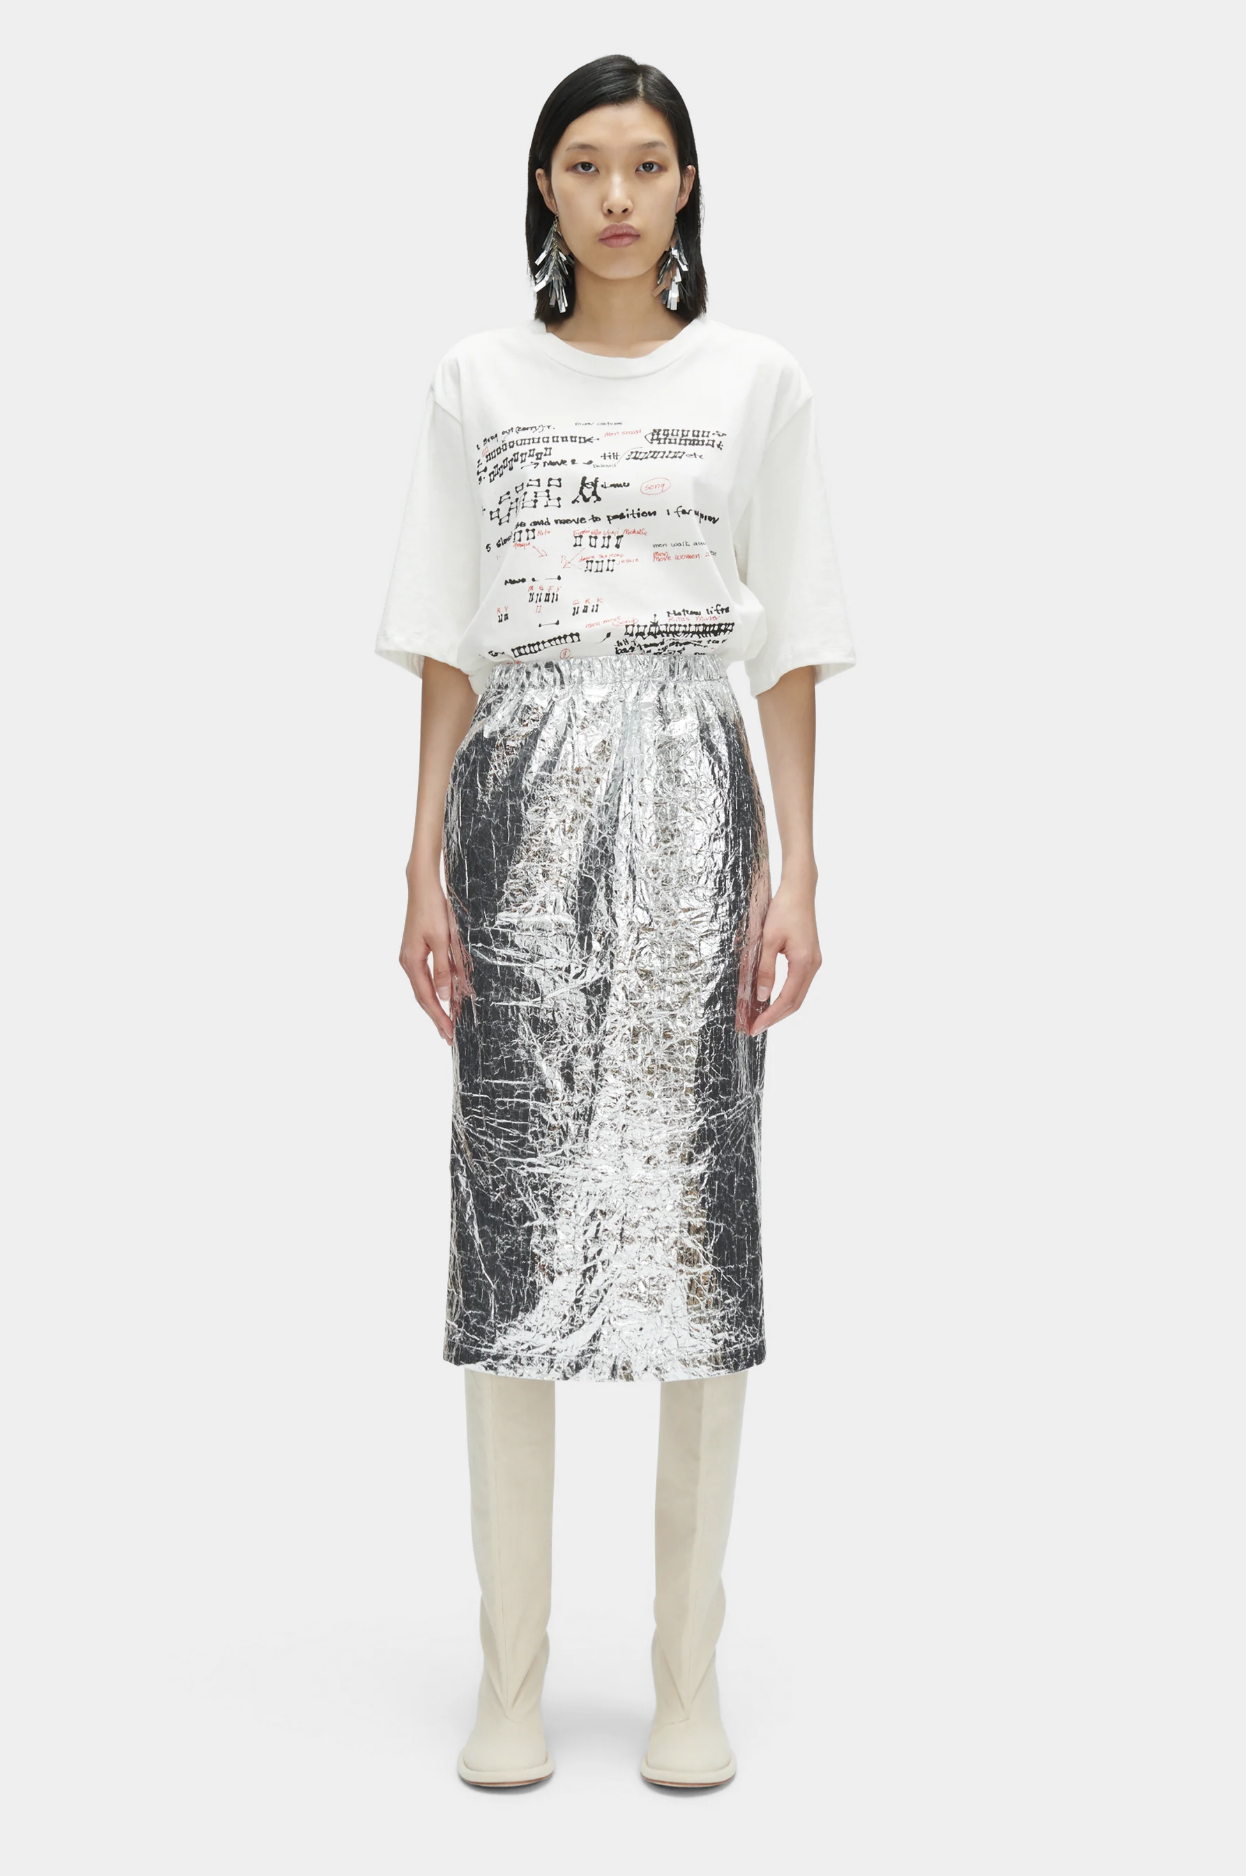 Mott Skirt in Silver by Rachel Comey